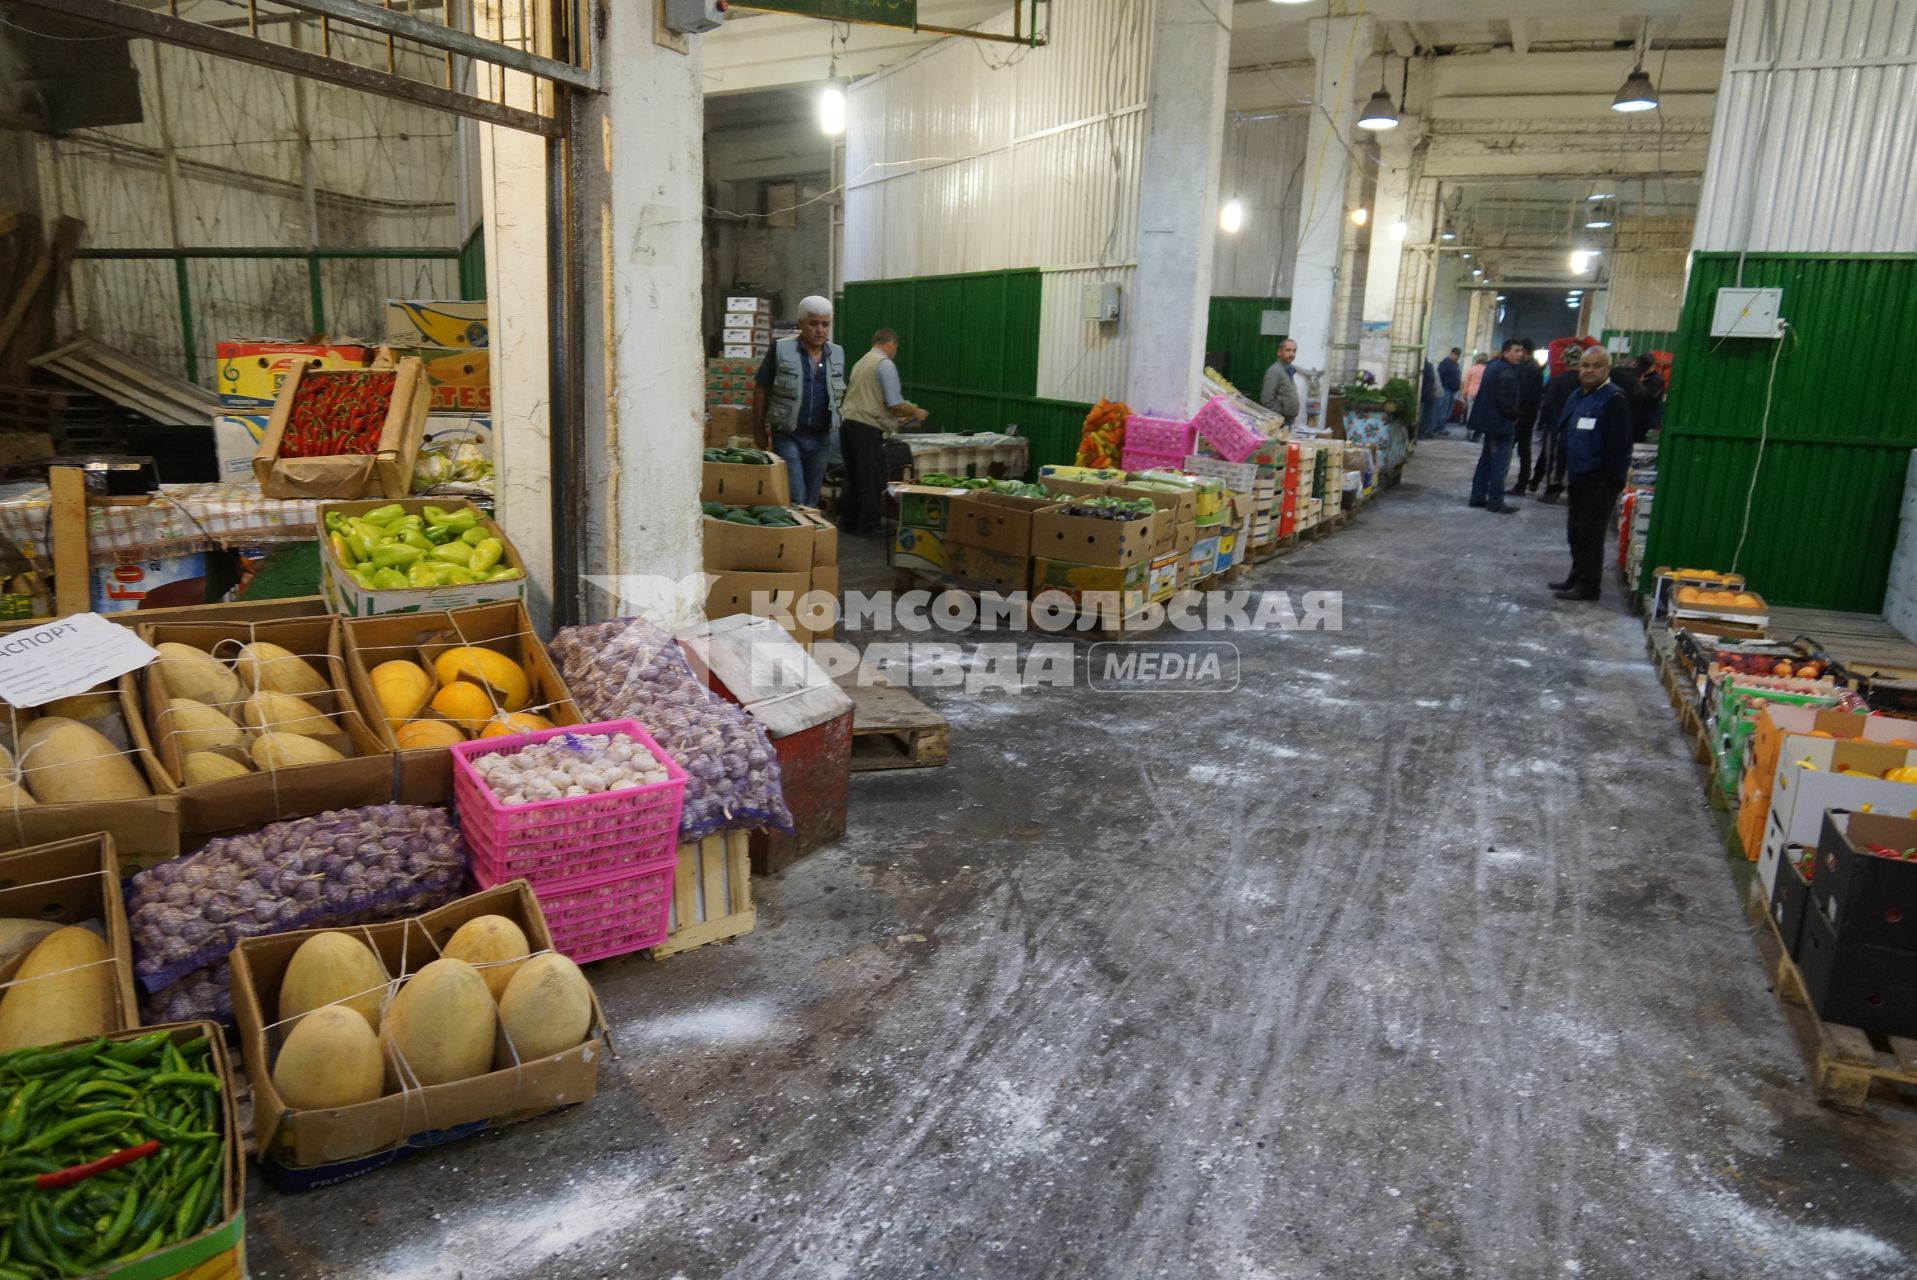 4-я овощебаза в Екатеринбурге, крытый овощной склад